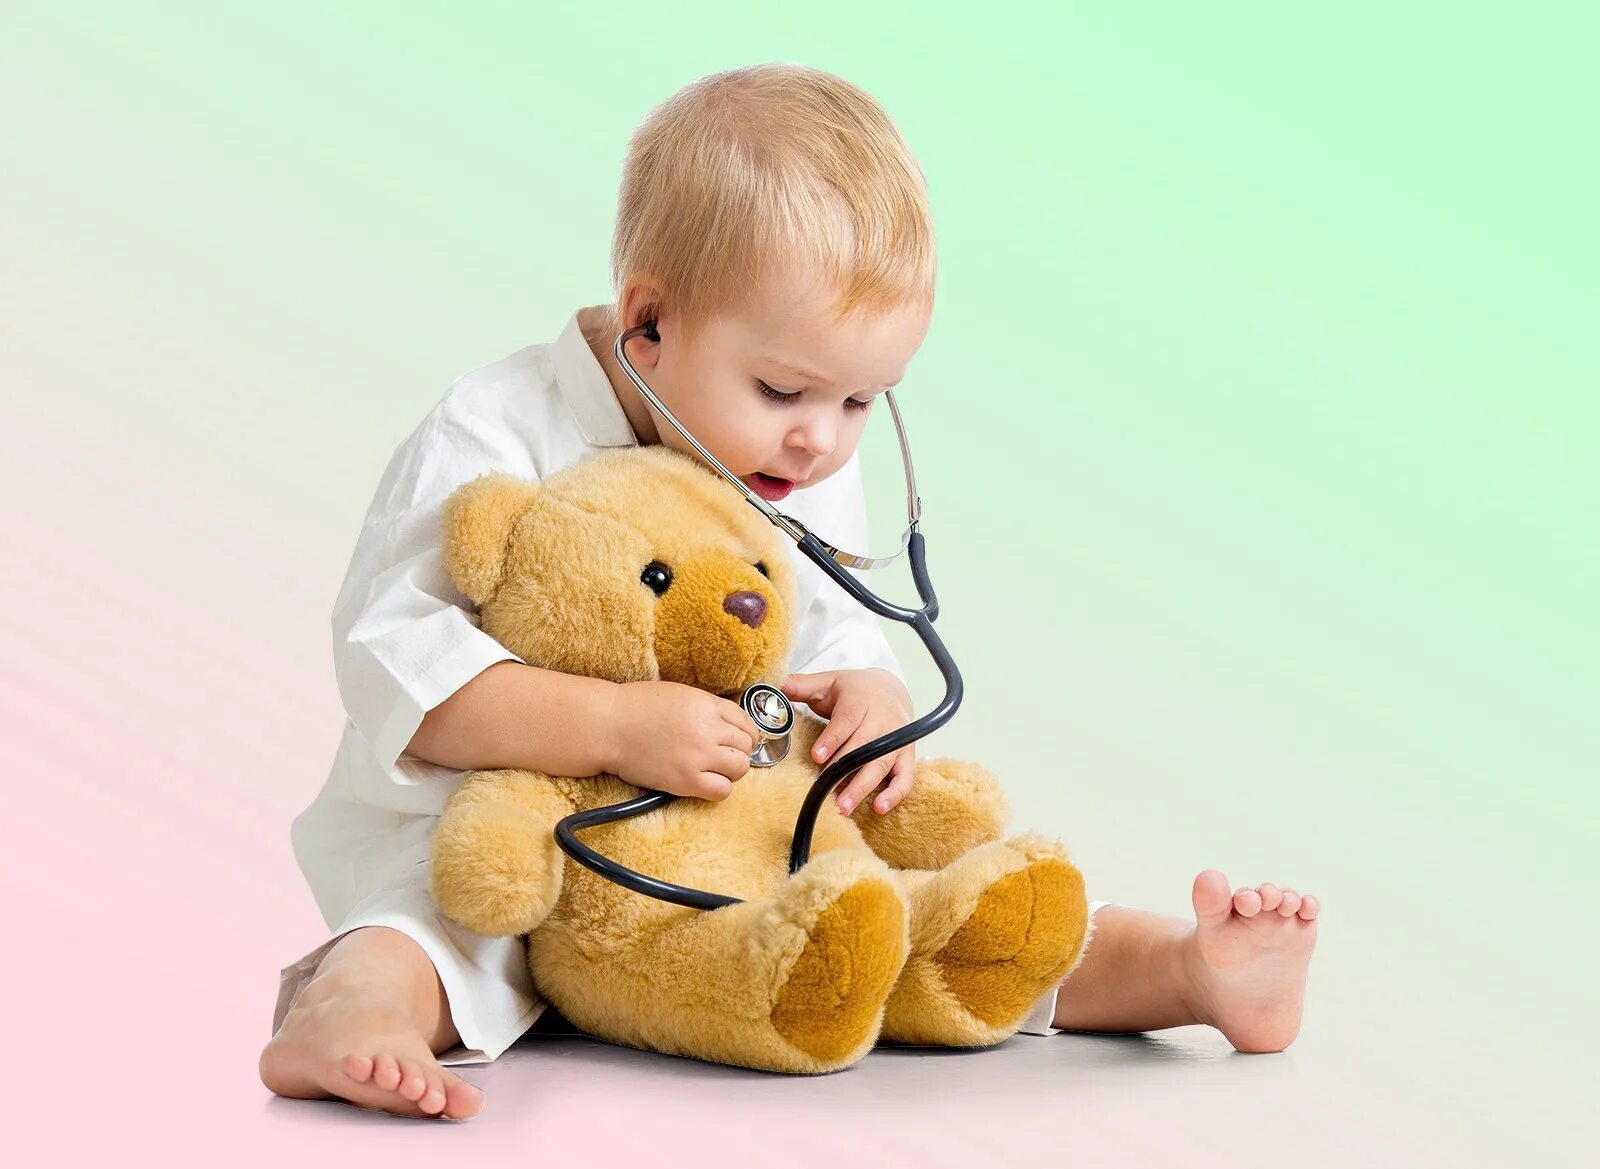 Педиатрия врач. Детский врач. Педиатрия. Медицина дети. Ребенок с фонендоскопом.